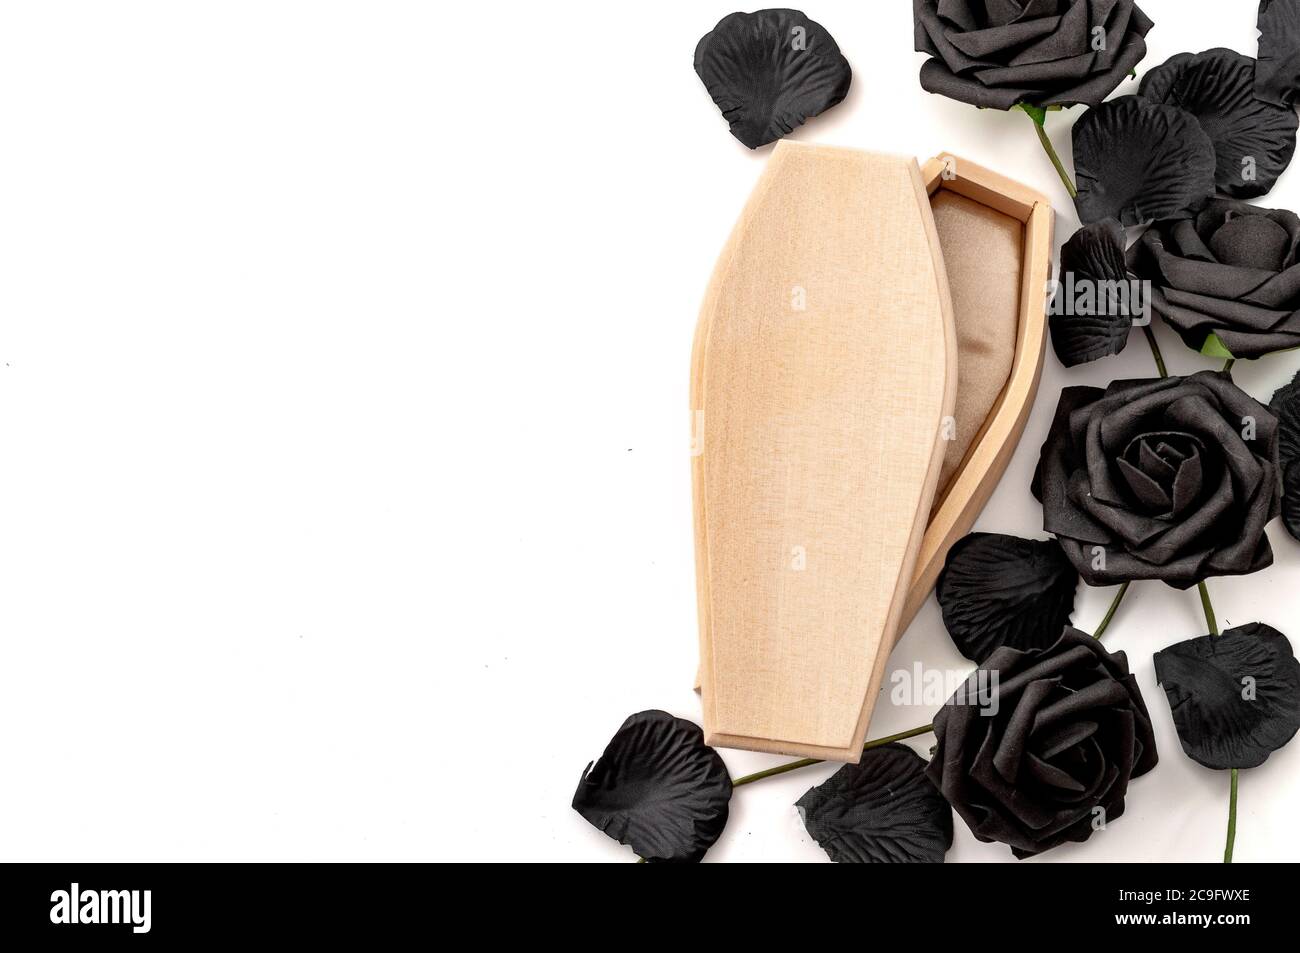 Last Au revoir, chagrin pour le défunt et tristesse de perdre des êtres chers concept avec cercueil de bois entouré de roses noires isolées sur fond blanc Banque D'Images